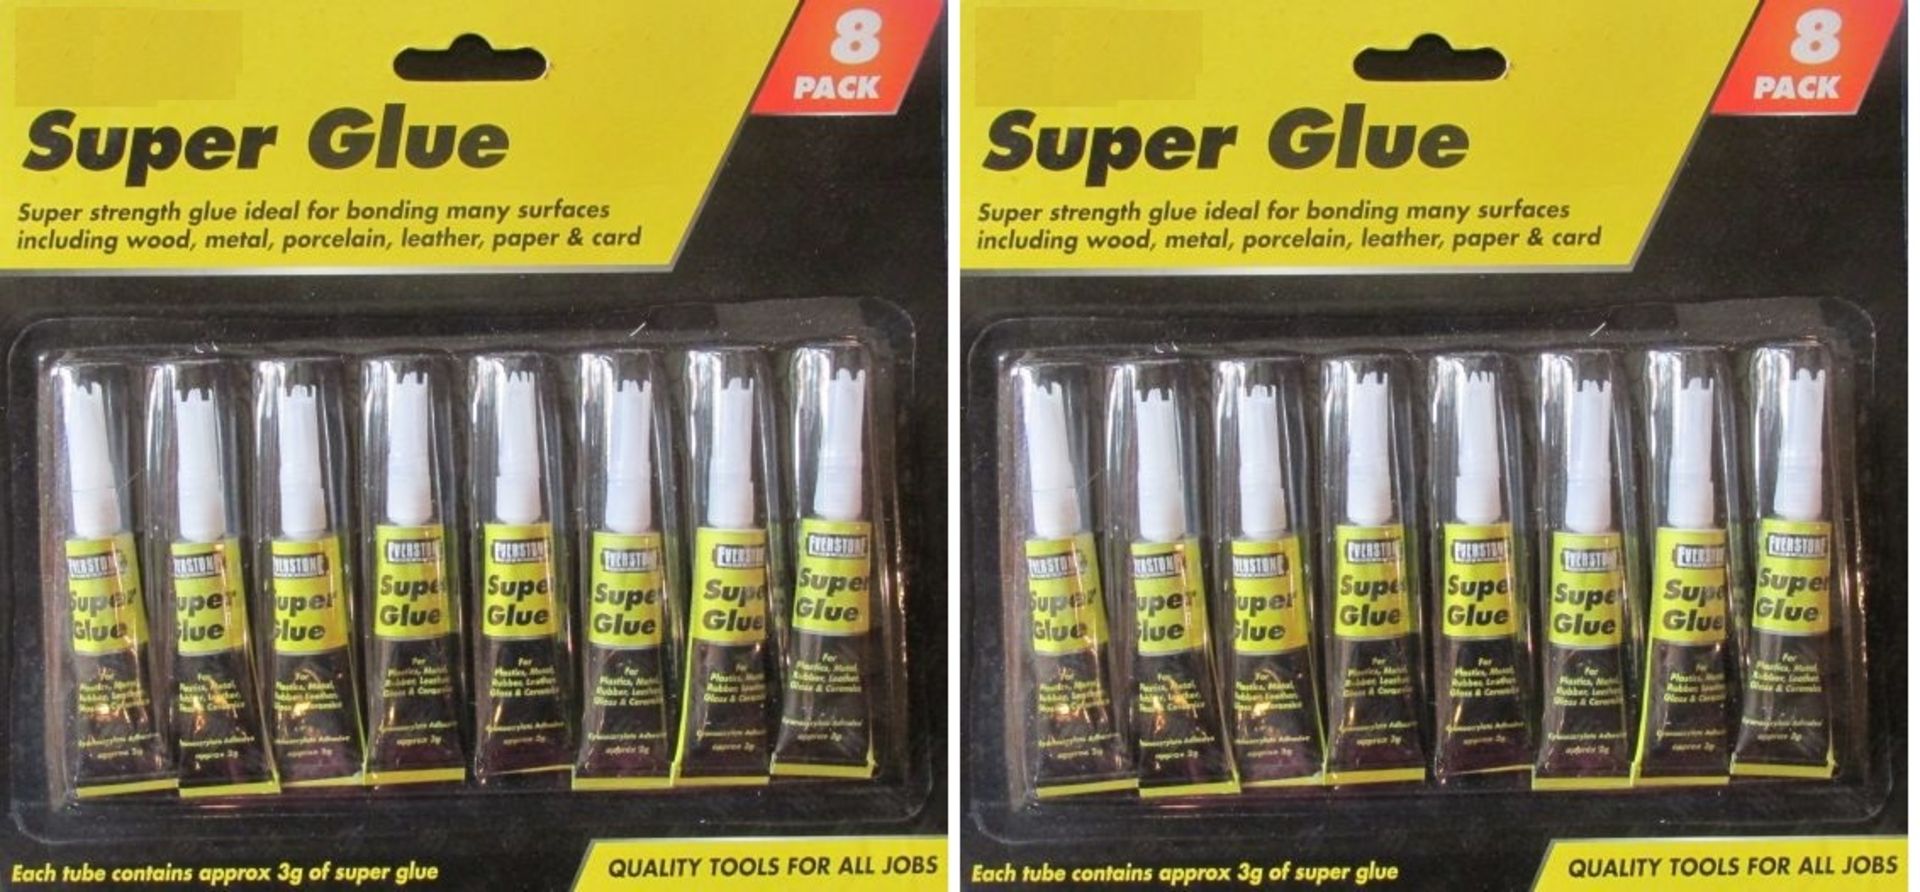 V Brand New 3 Packs Of 8 x 3gram Super Glue - For Bonding Wood/Metal/Porecelain/Paper Etc